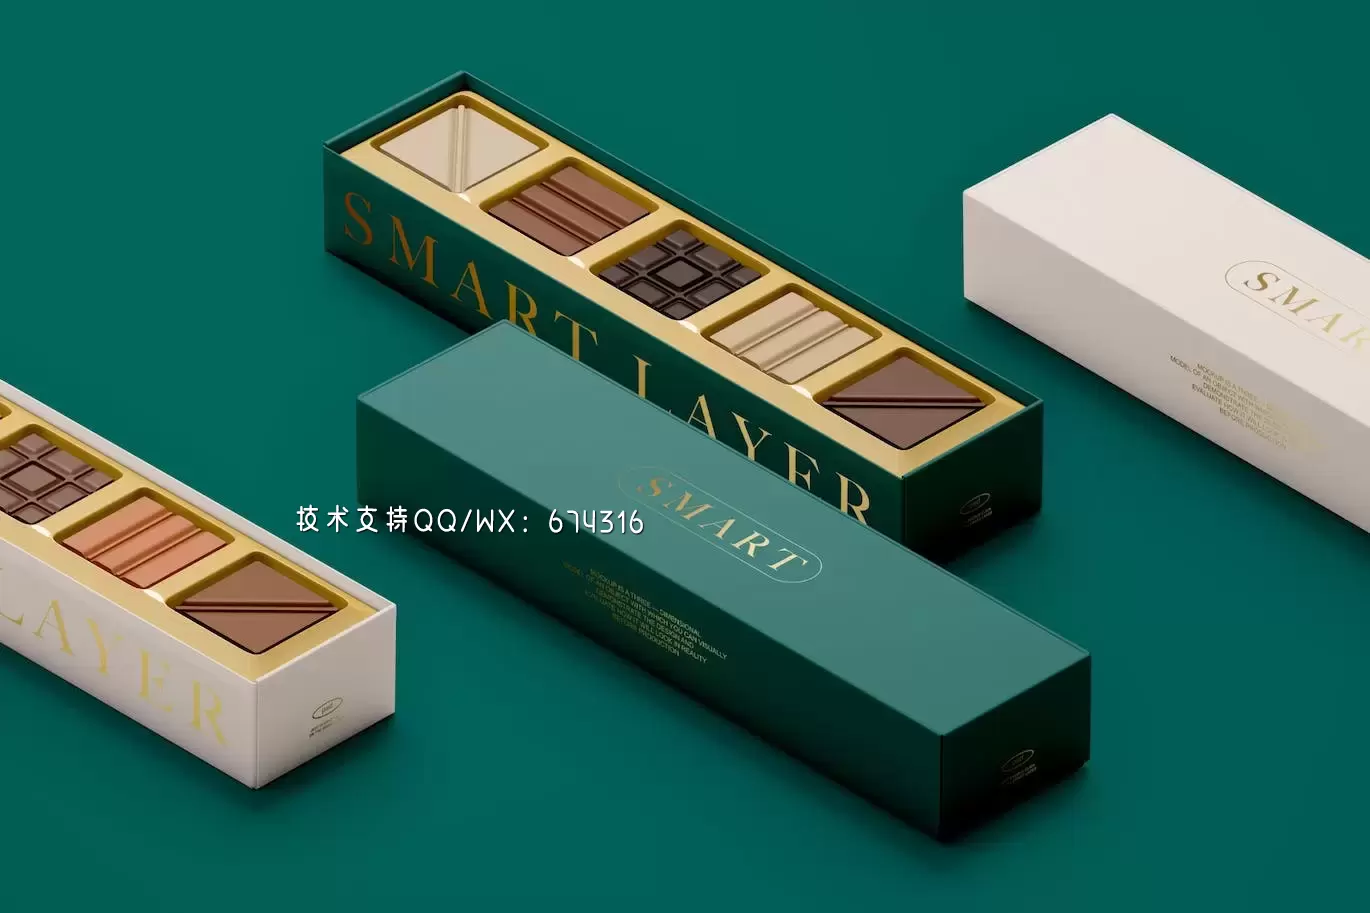 高端巧克力盒礼品包装样机 (PSD)免费下载